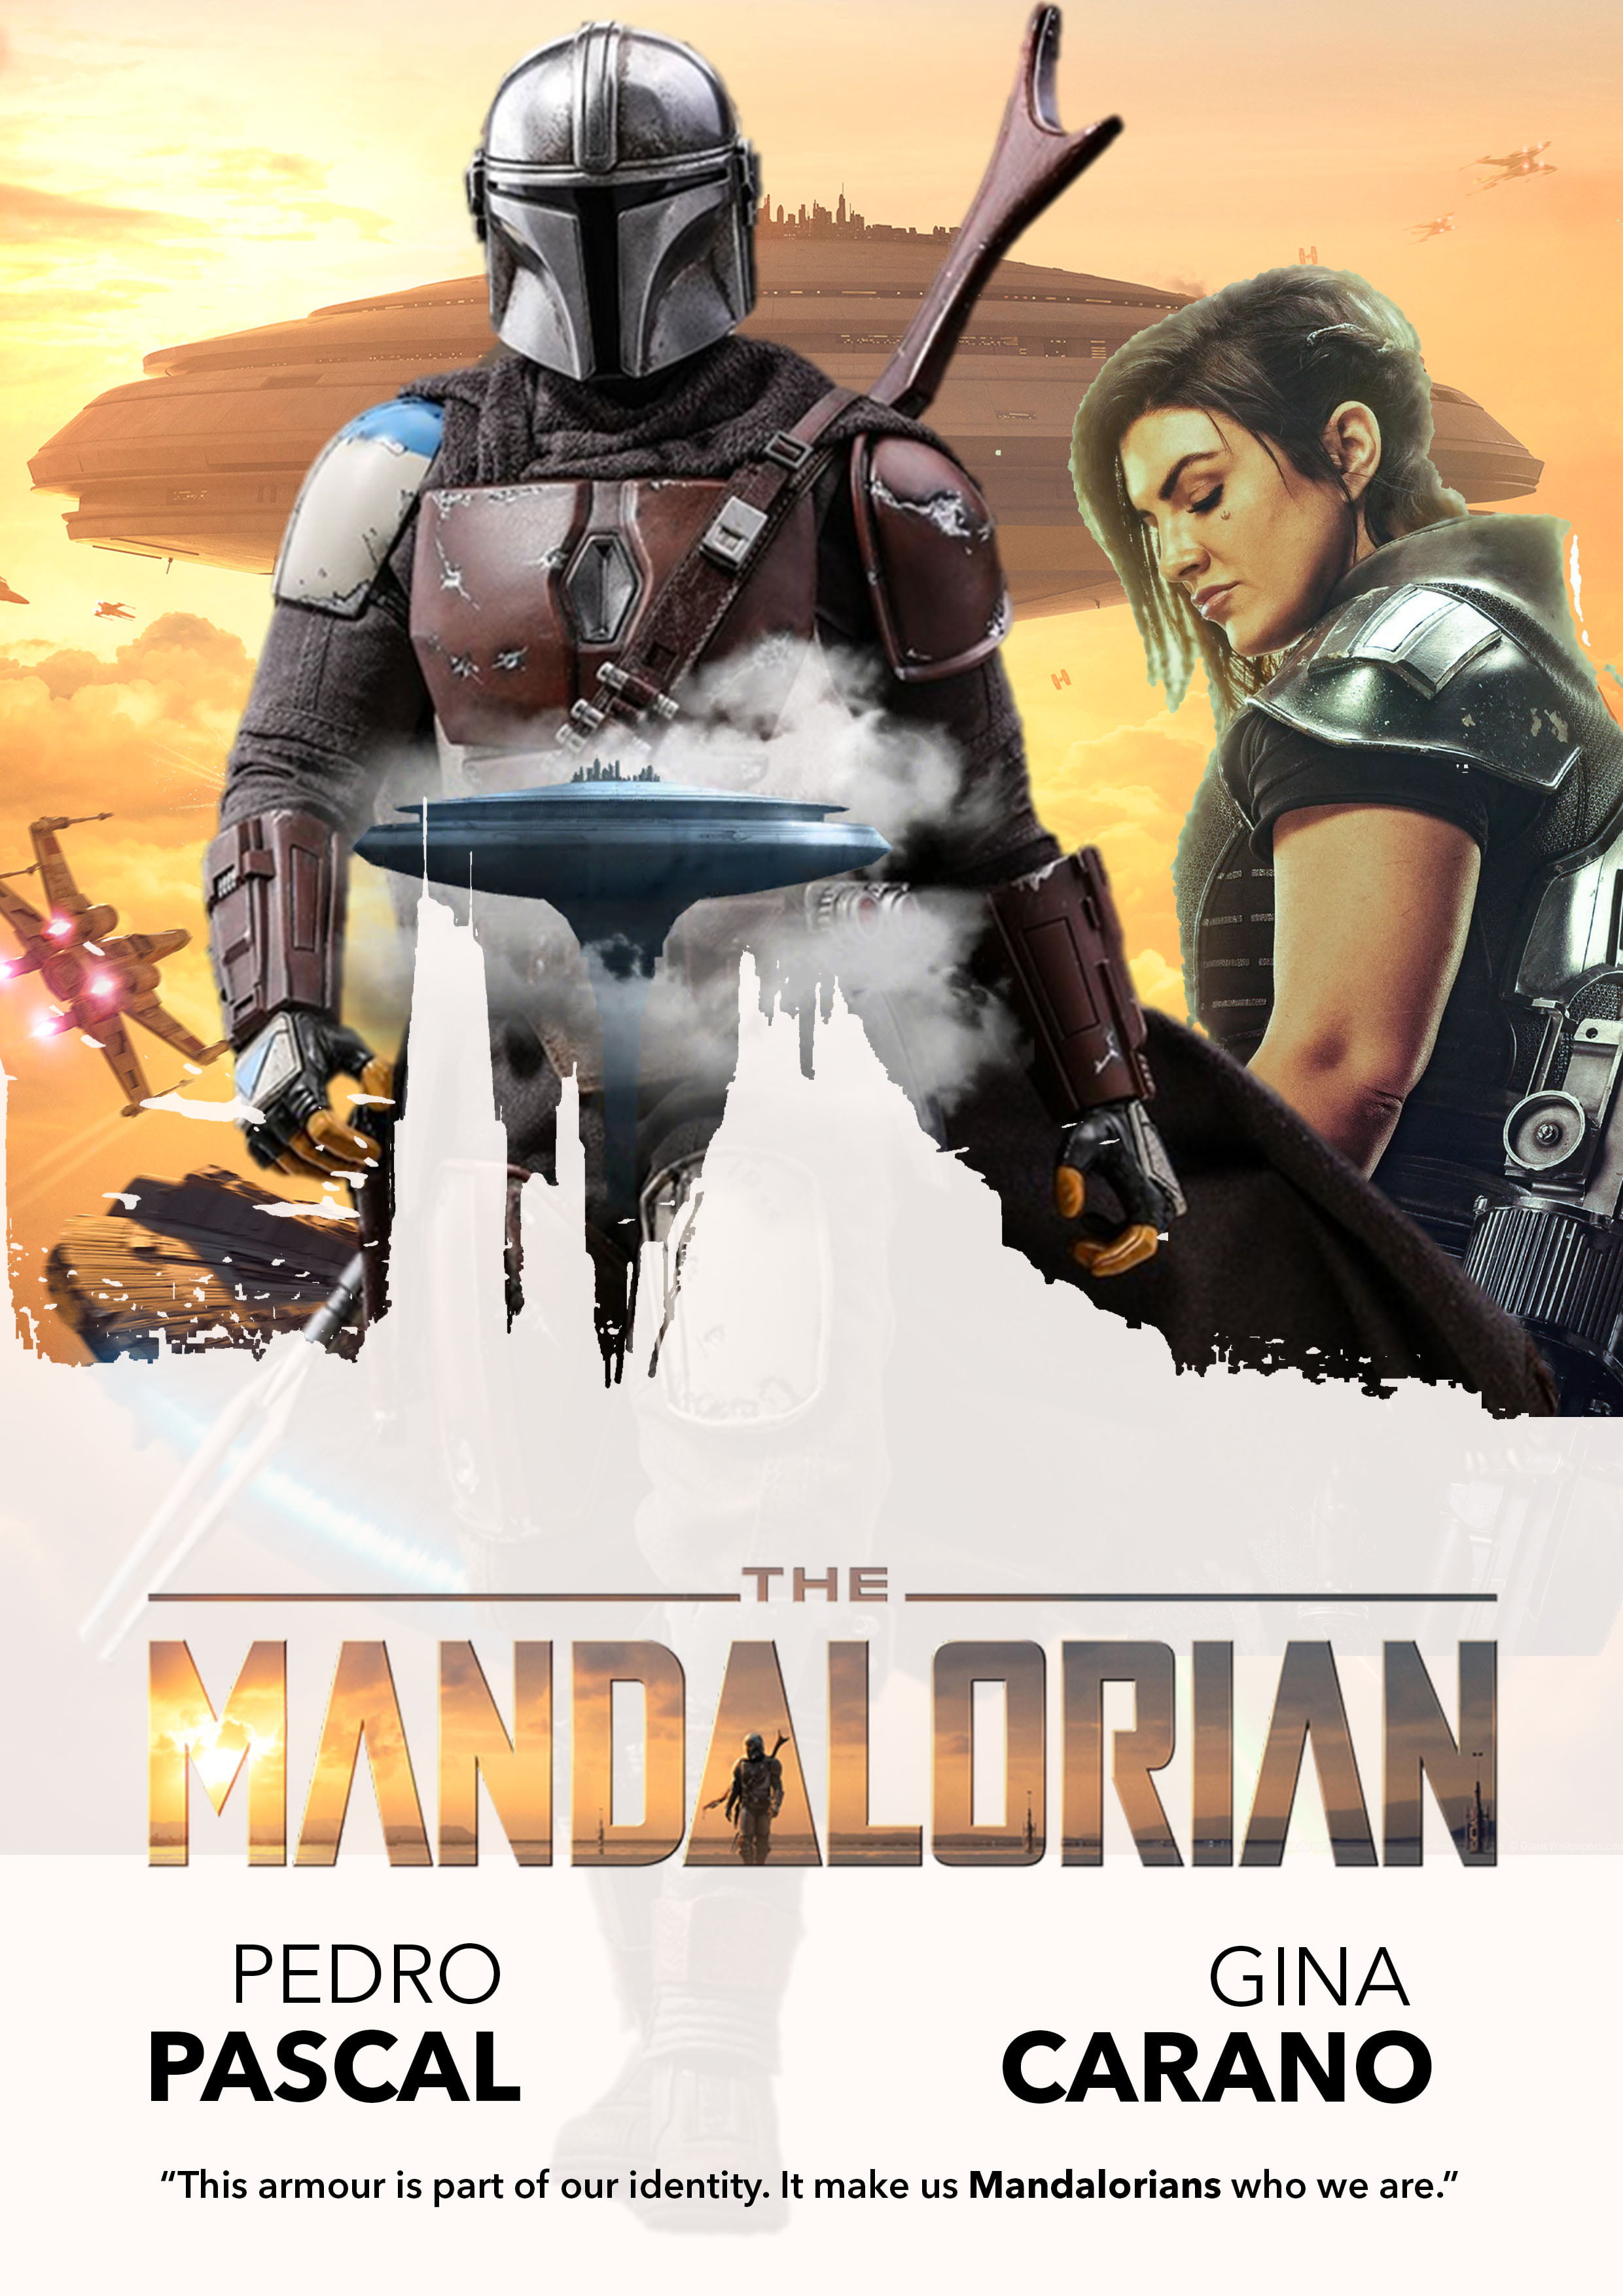 Star Wars, fan art, Mandalorians, The Mandalorian